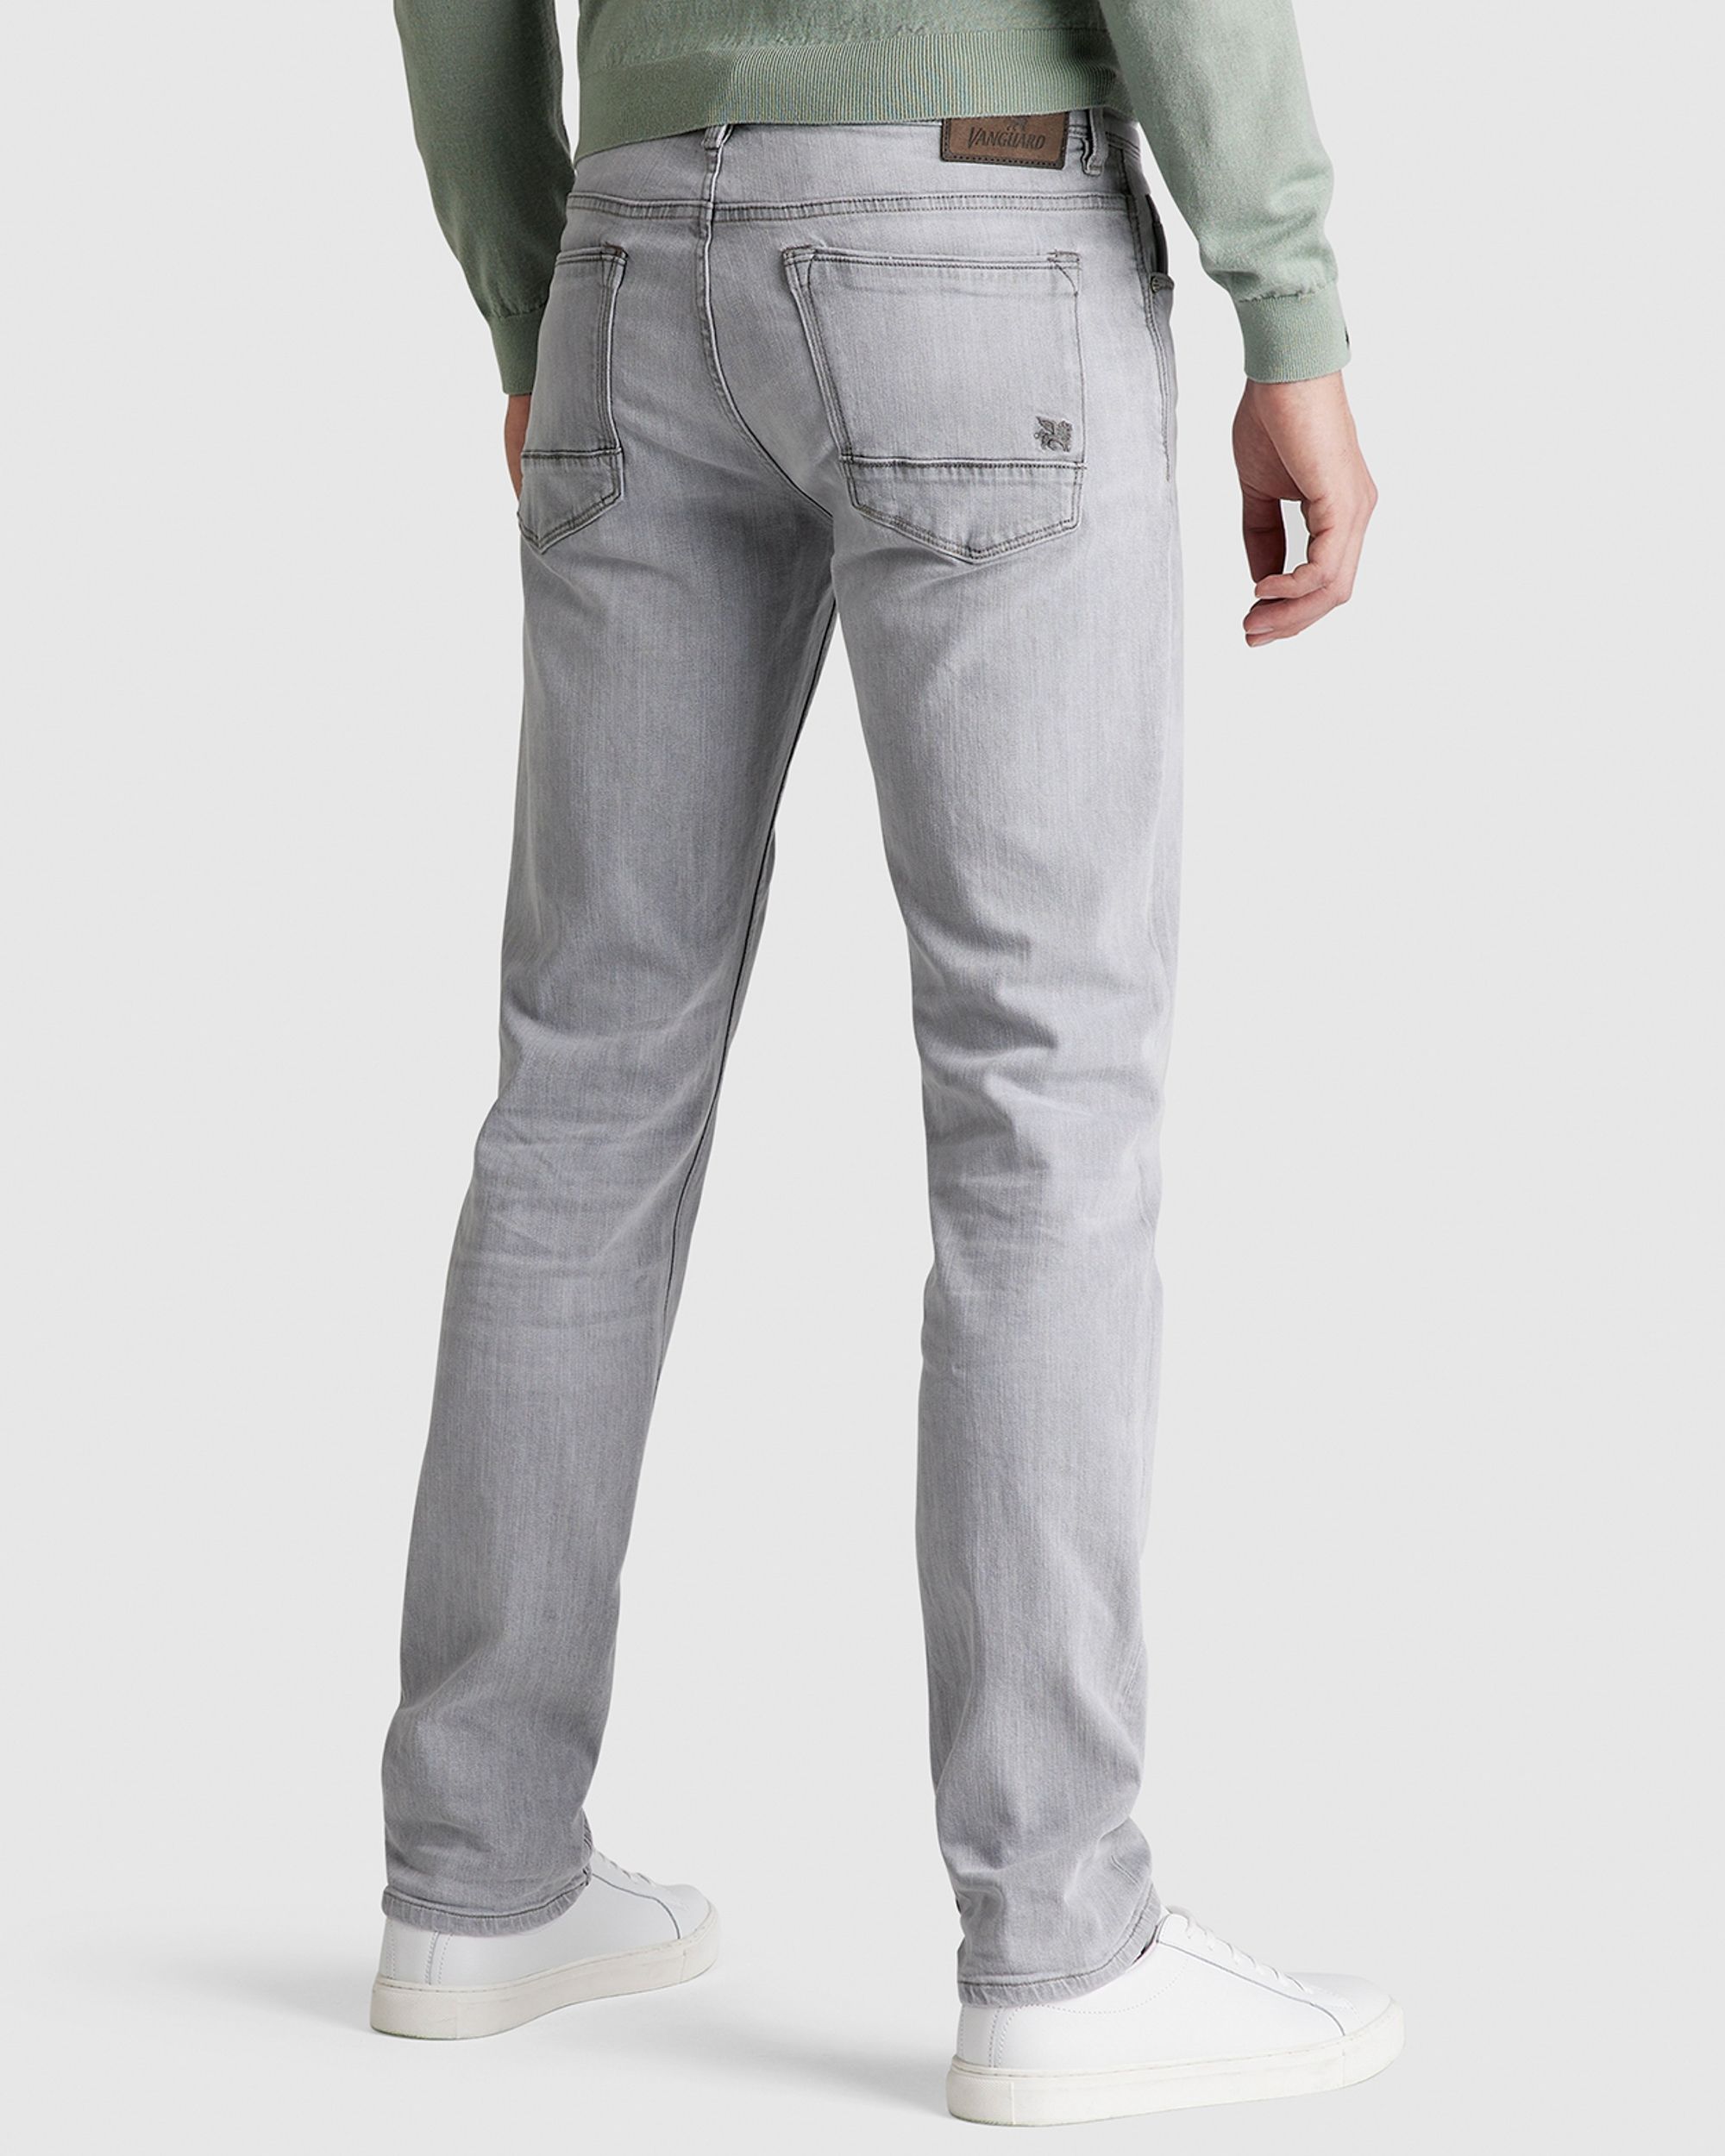 Vanguard V7 Rider LGC jeans | Shop nu - Only for Men